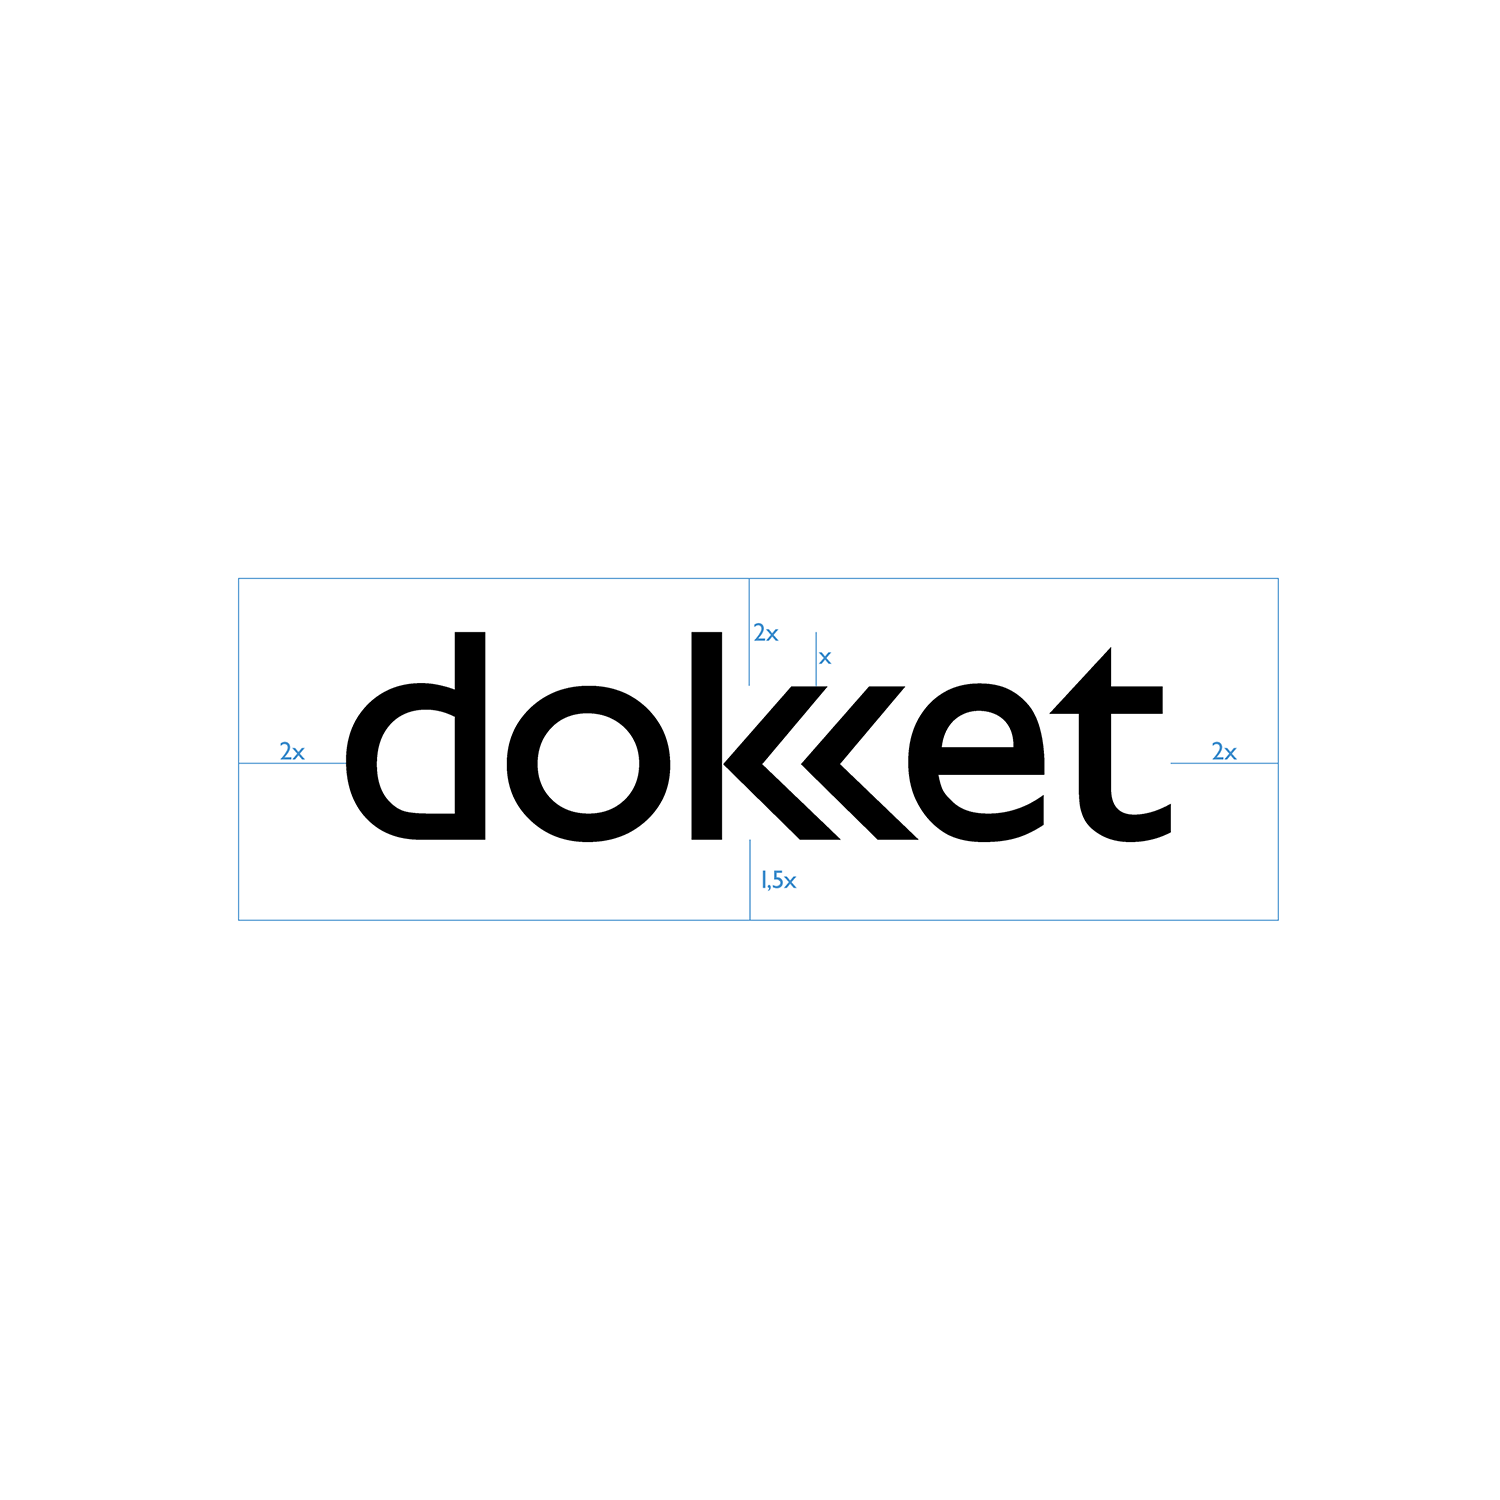 dokket-02-joanna-poltorak-design